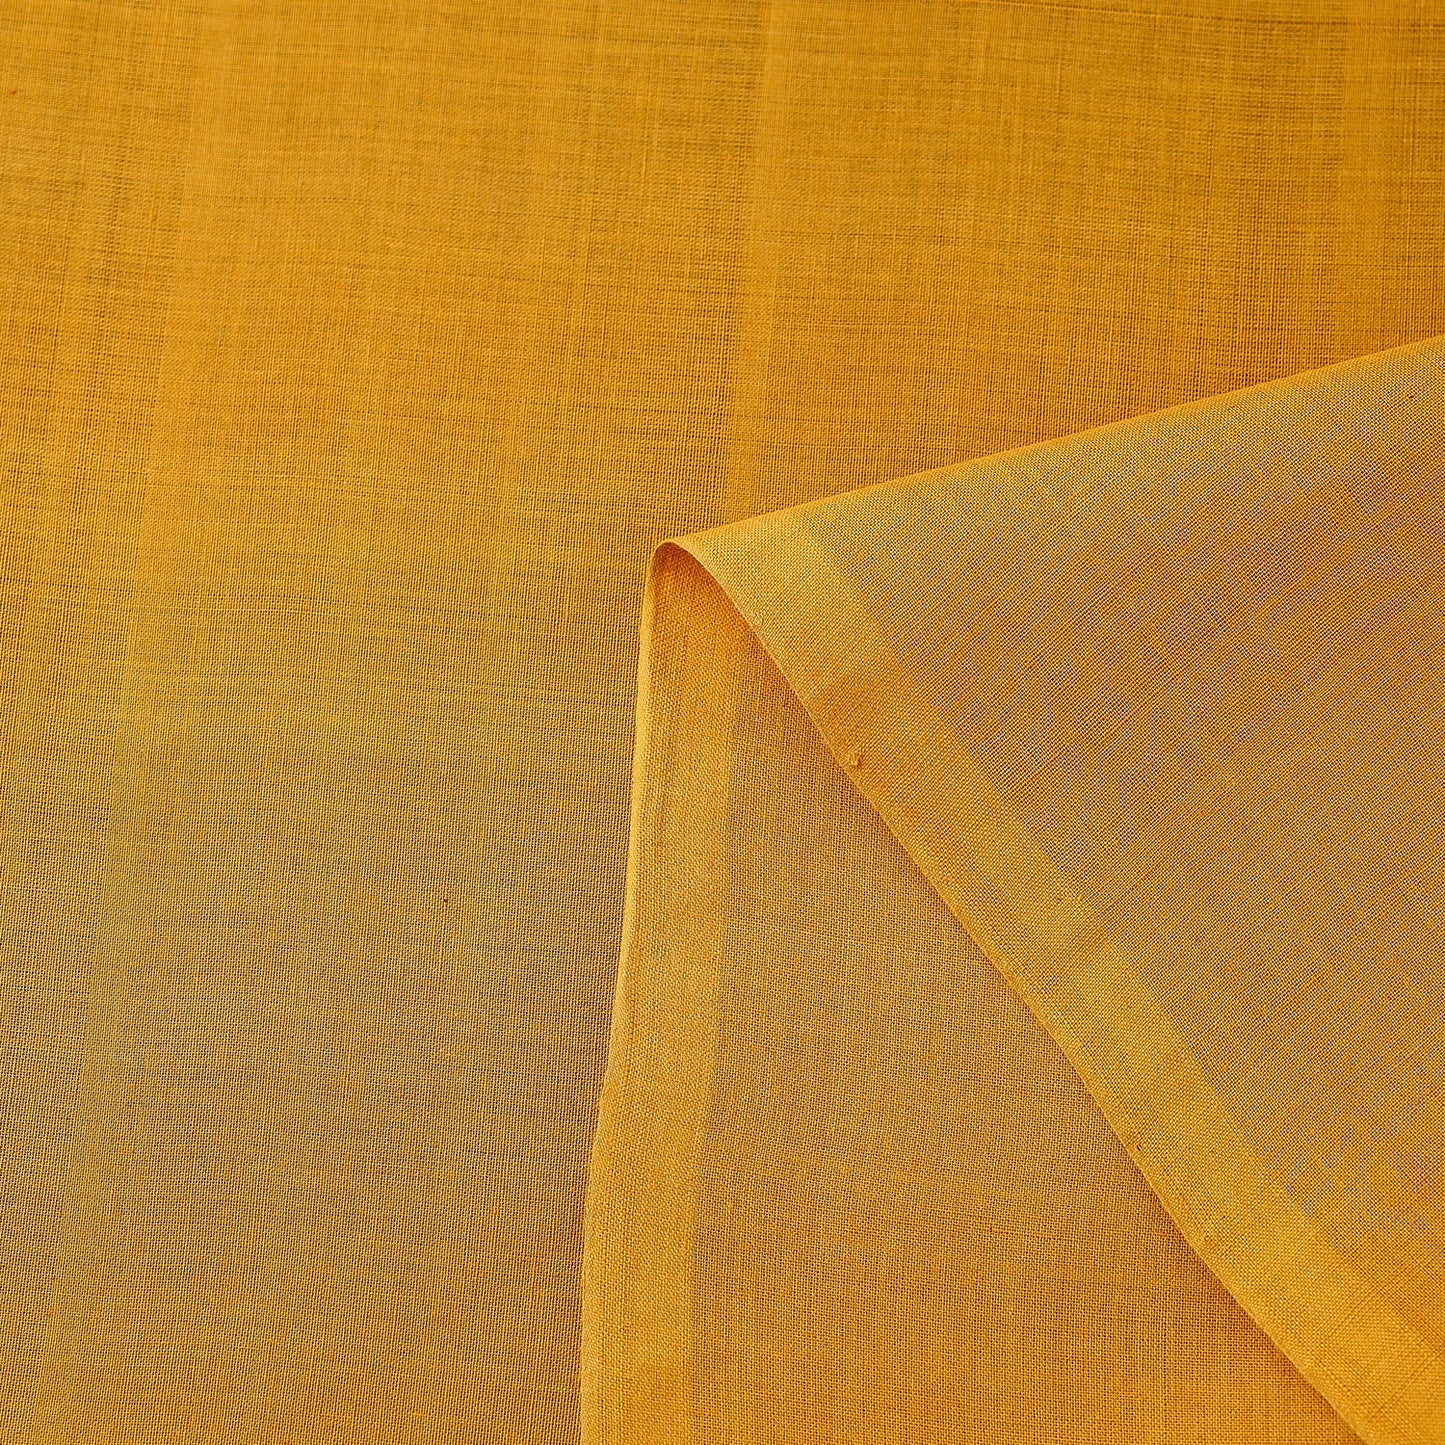 Dark Yellow Original Mangalagiri Handloom Cotton Fabric